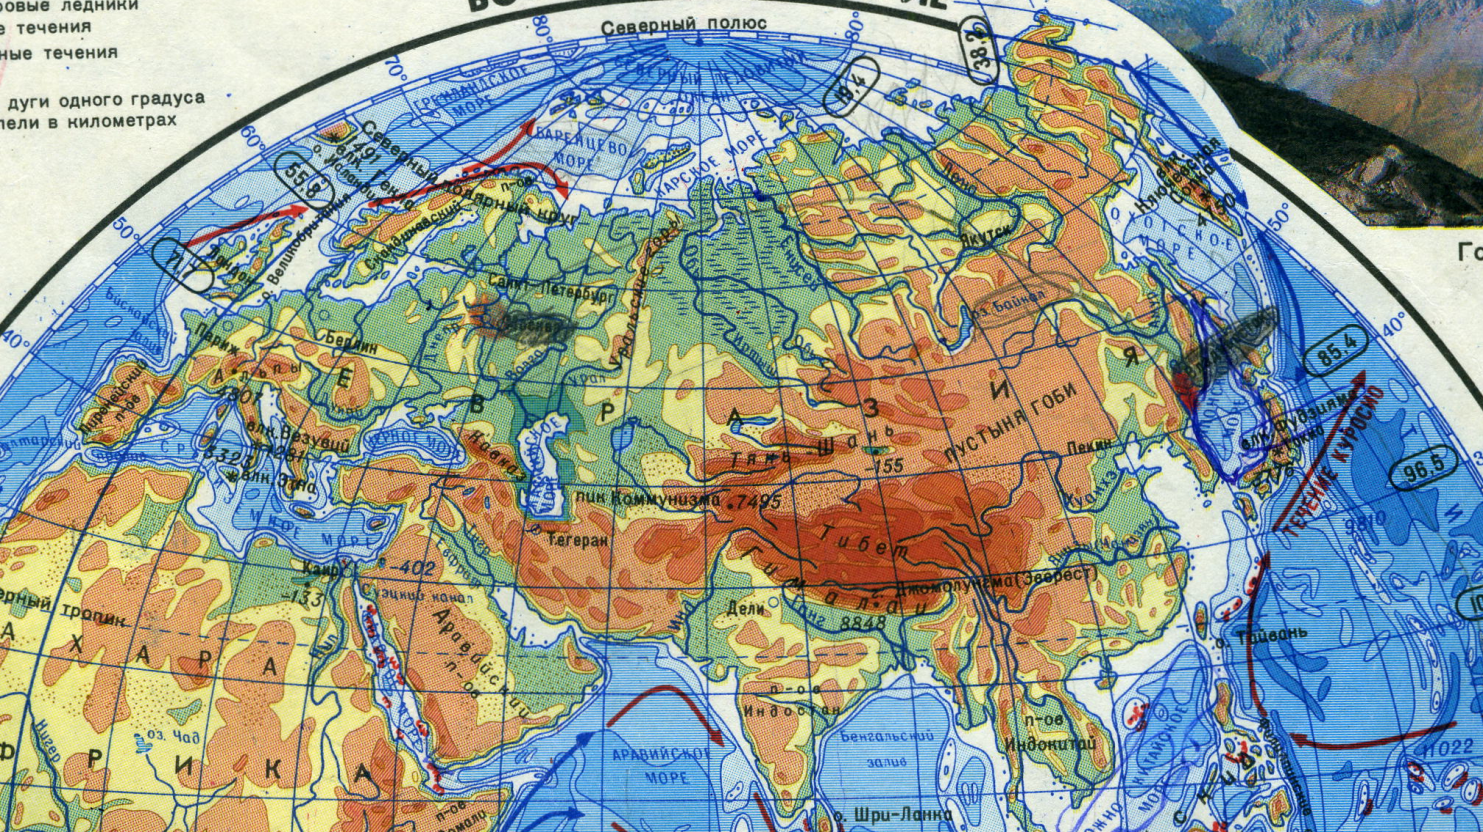 Материк после евразии. Материк Евразия физическая карта. Расположение континента Евразия. Физическая карта Евразии. Карта Евразии географическая.